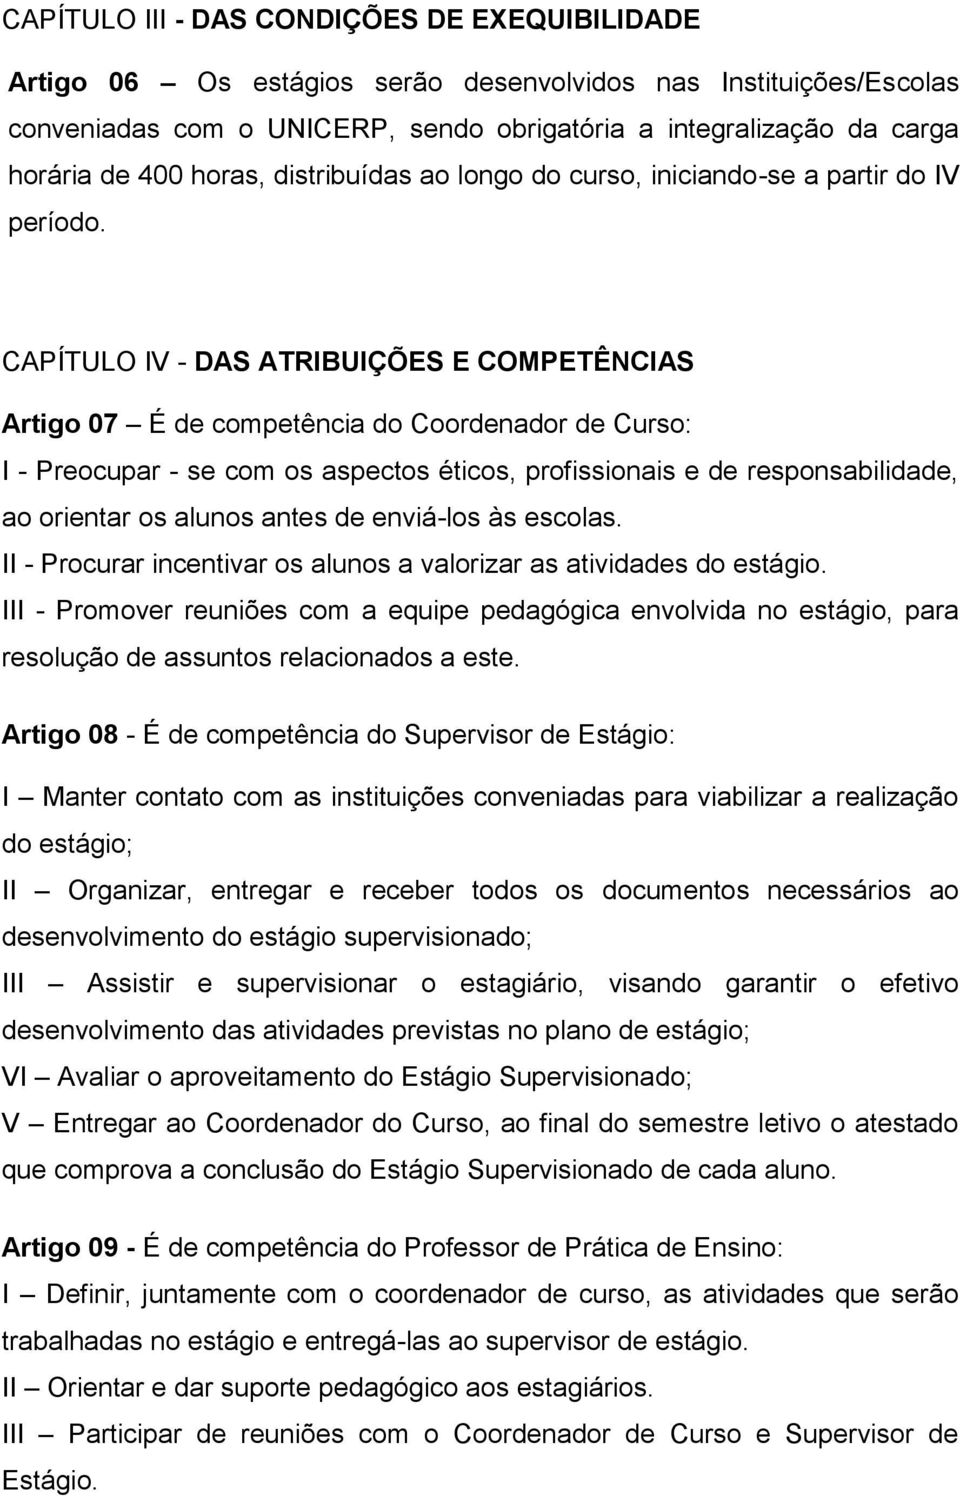 CAPÍTULO IV - DAS ATRIBUIÇÕES E COMPETÊNCIAS Artigo 07 É de competência do Coordenador de Curso: I - Preocupar - se com os aspectos éticos, profissionais e de responsabilidade, ao orientar os alunos